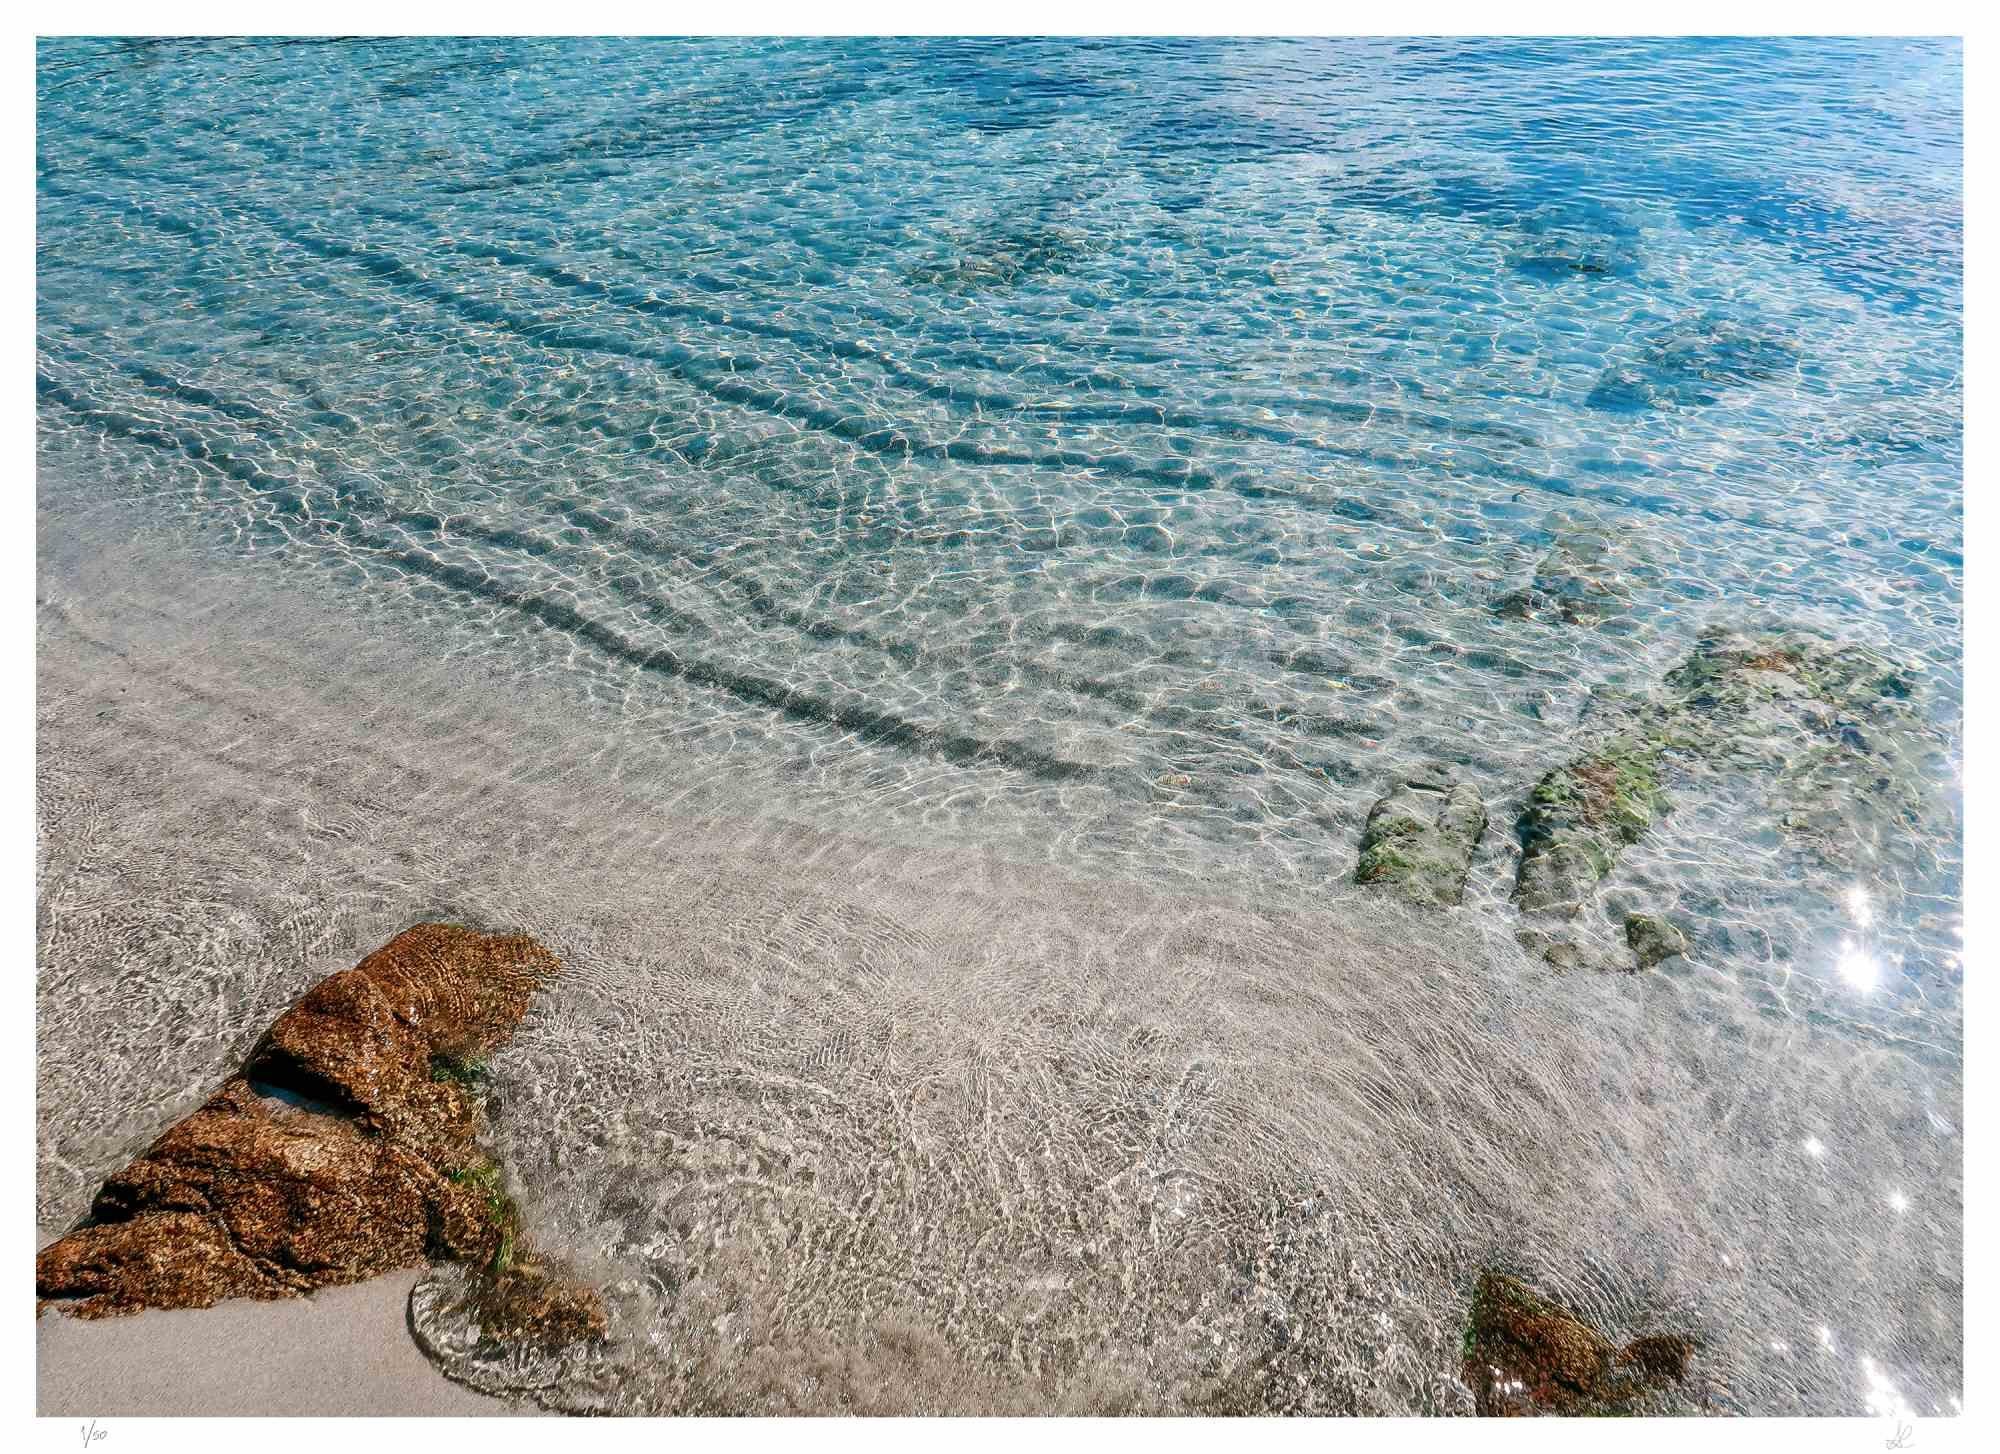 Sardinien ist ein Foto von Amanda Ludovisi aus dem Jahr 2018.

Es stellt eine ruhige Welle an der Küste Sardiniens dar, die zarte Farben aufweist. Dies ist ein Giclée-Druck auf Canson Baryta Matt Papier. Limitierte Auflage von 50 Exemplaren.

Rechts